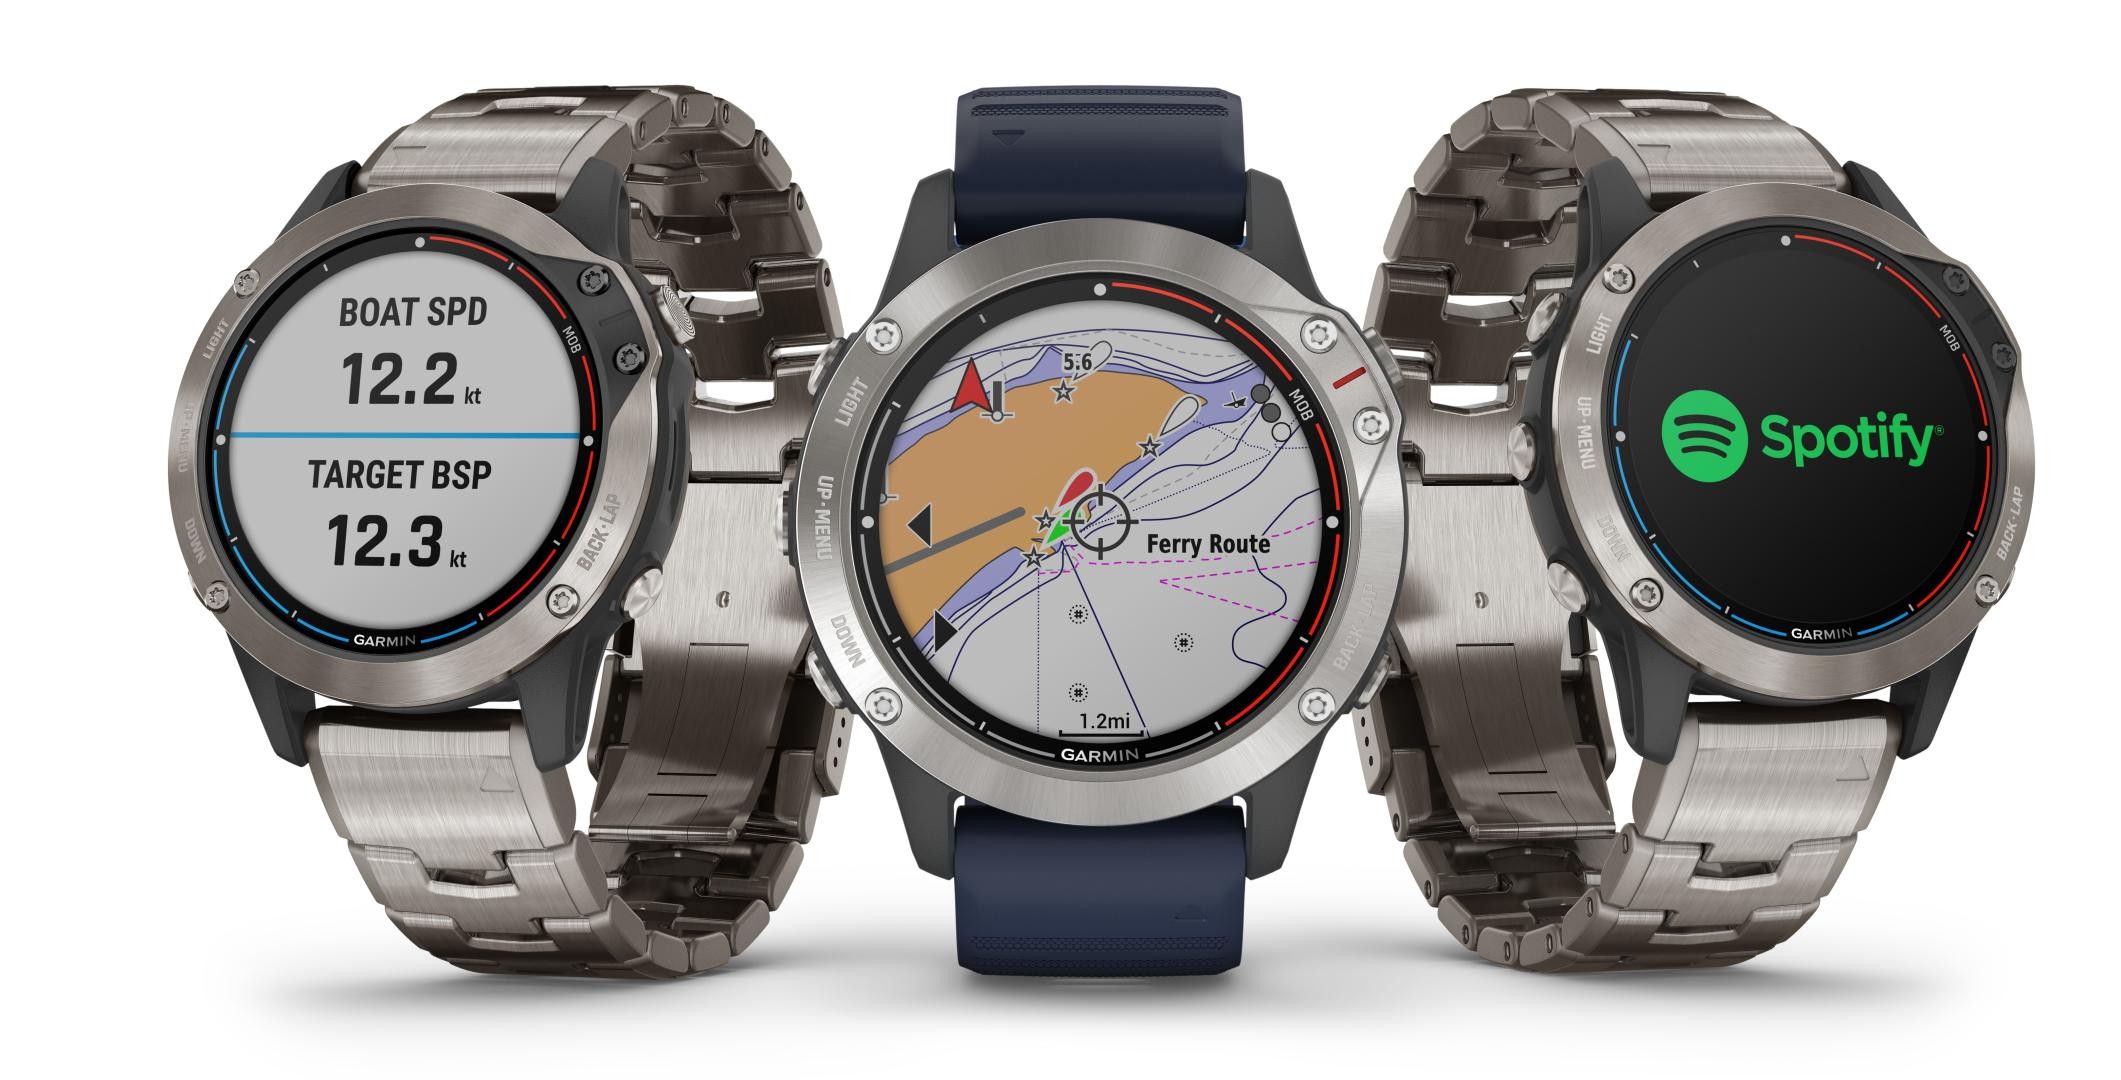 Il nuovo quatix 6, lo smartwatch multisport di Garmin